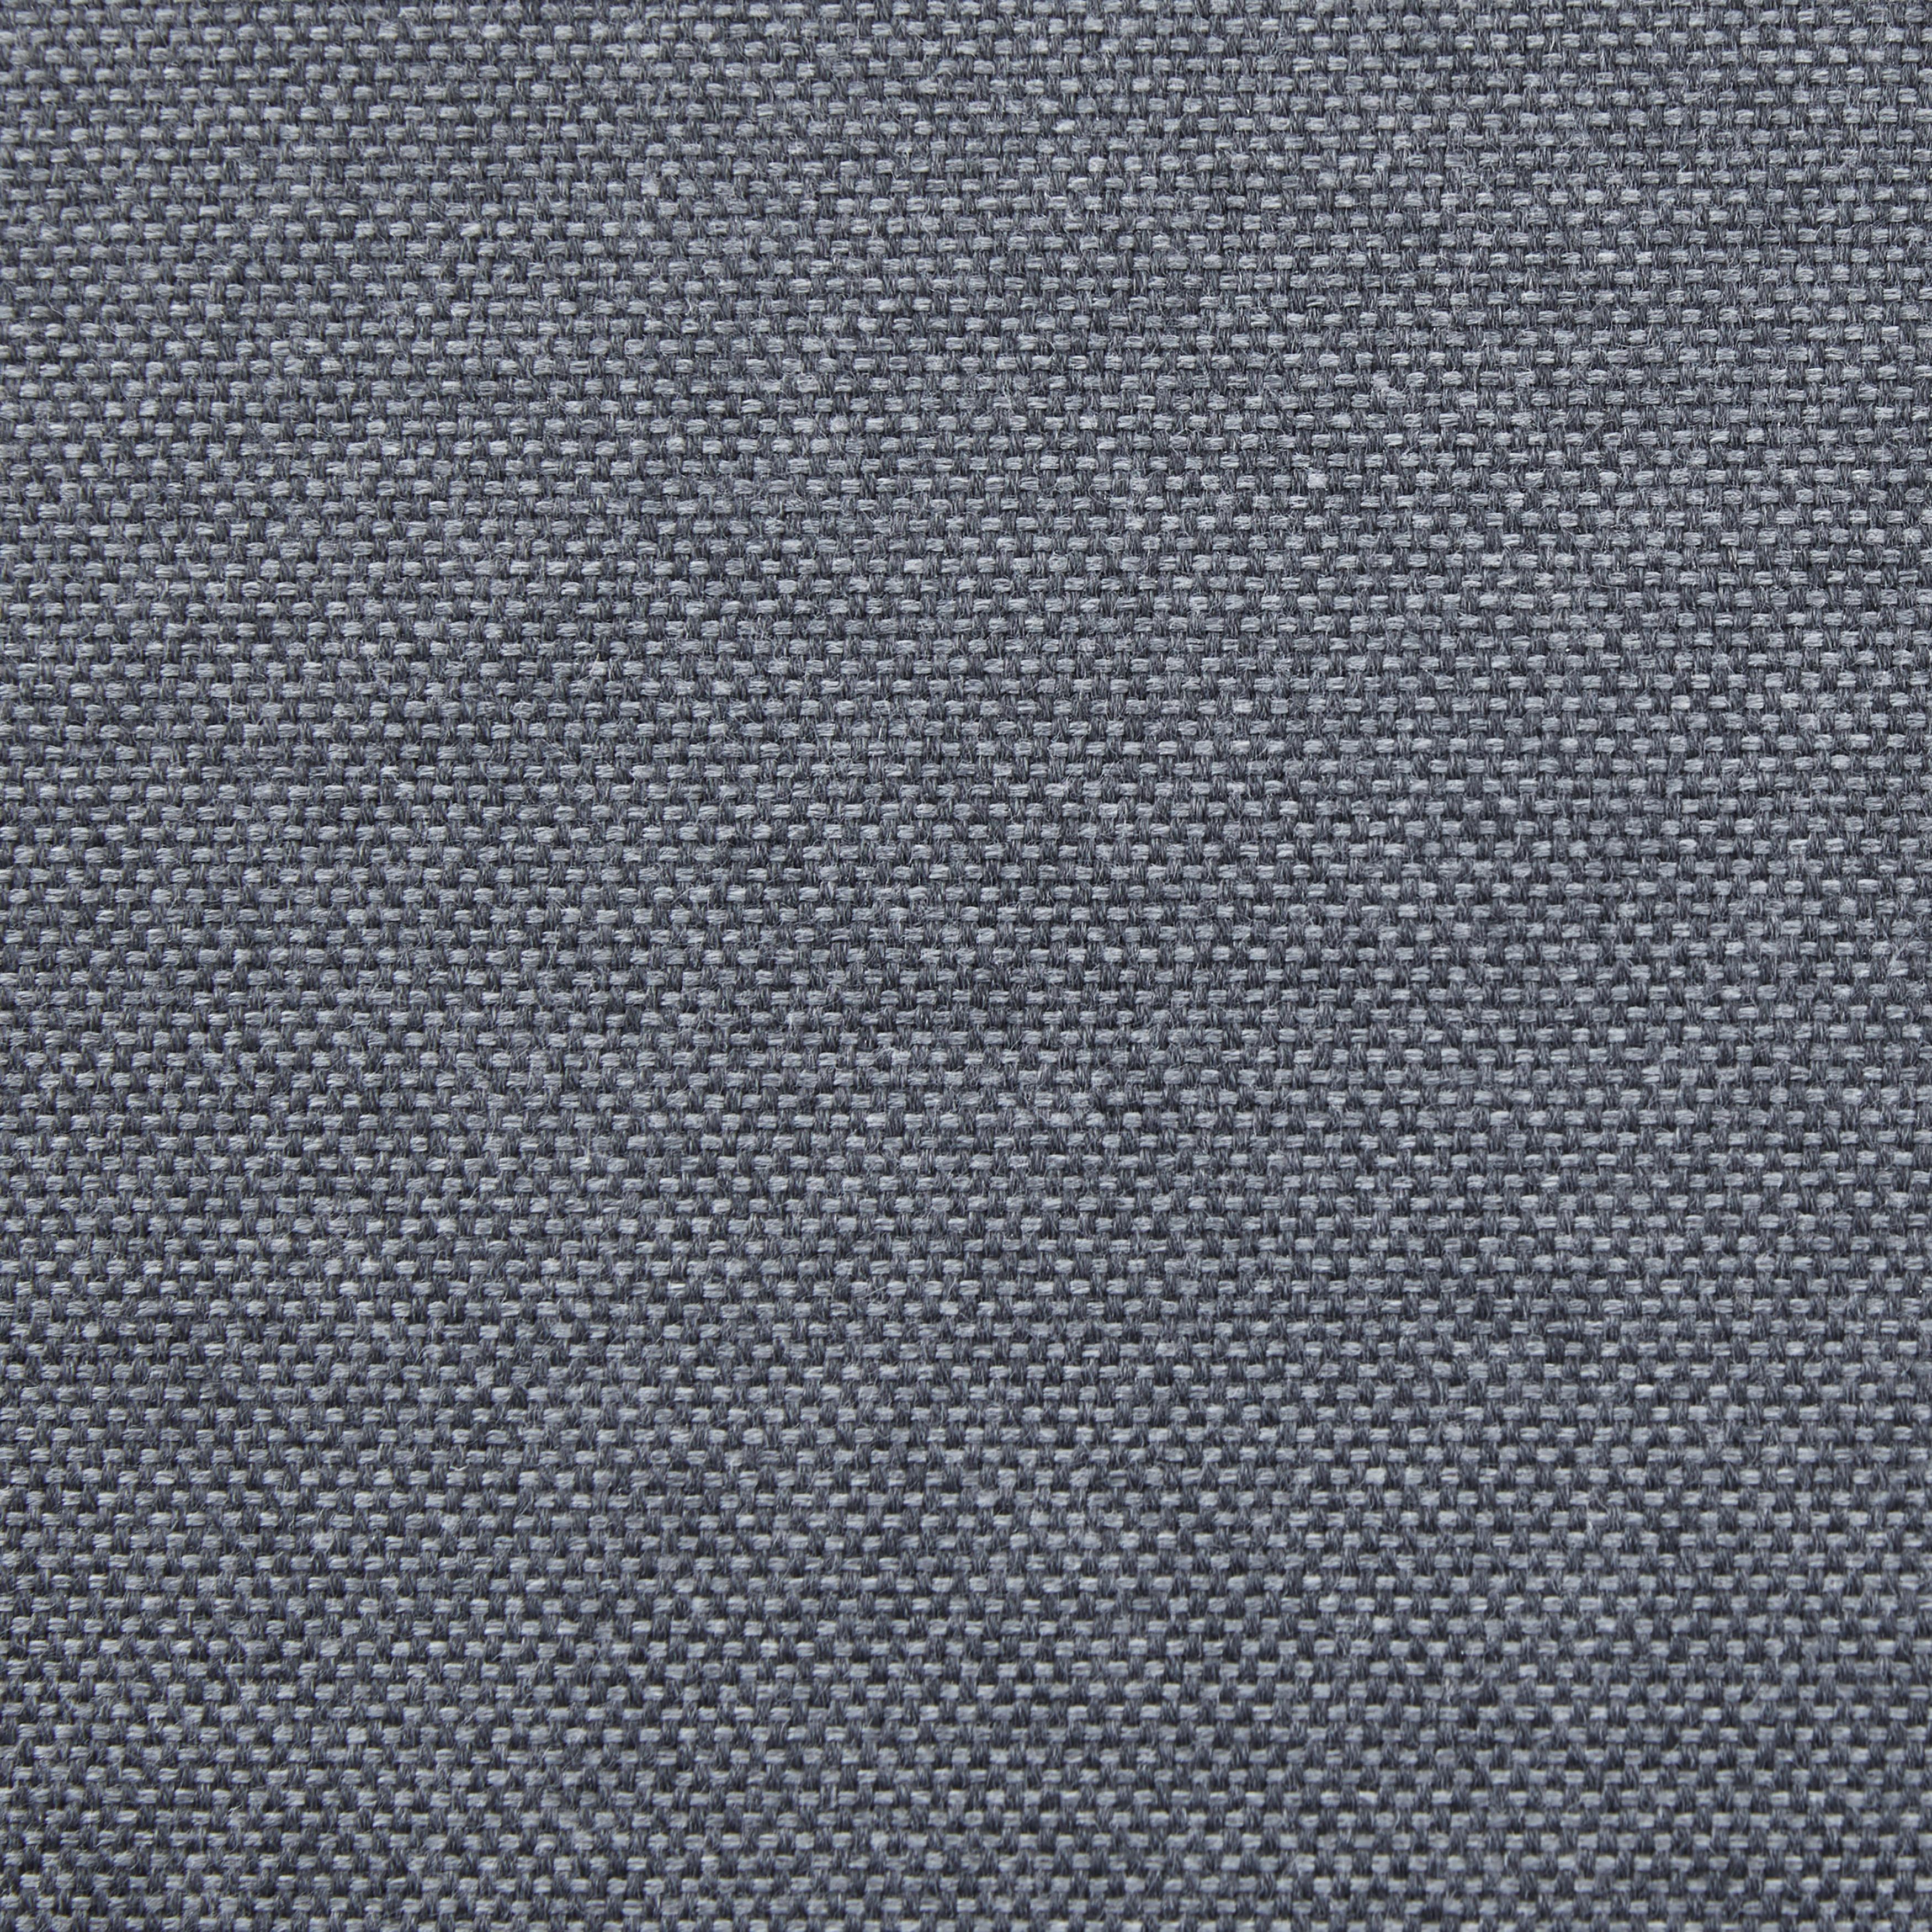 Loungegarnitur "Adriano", grau, Outdoorgewebe - Dunkelgrau/Anthrazit, MODERN, Glas/Textil (171/69.5/72cm) - Bessagi Garden